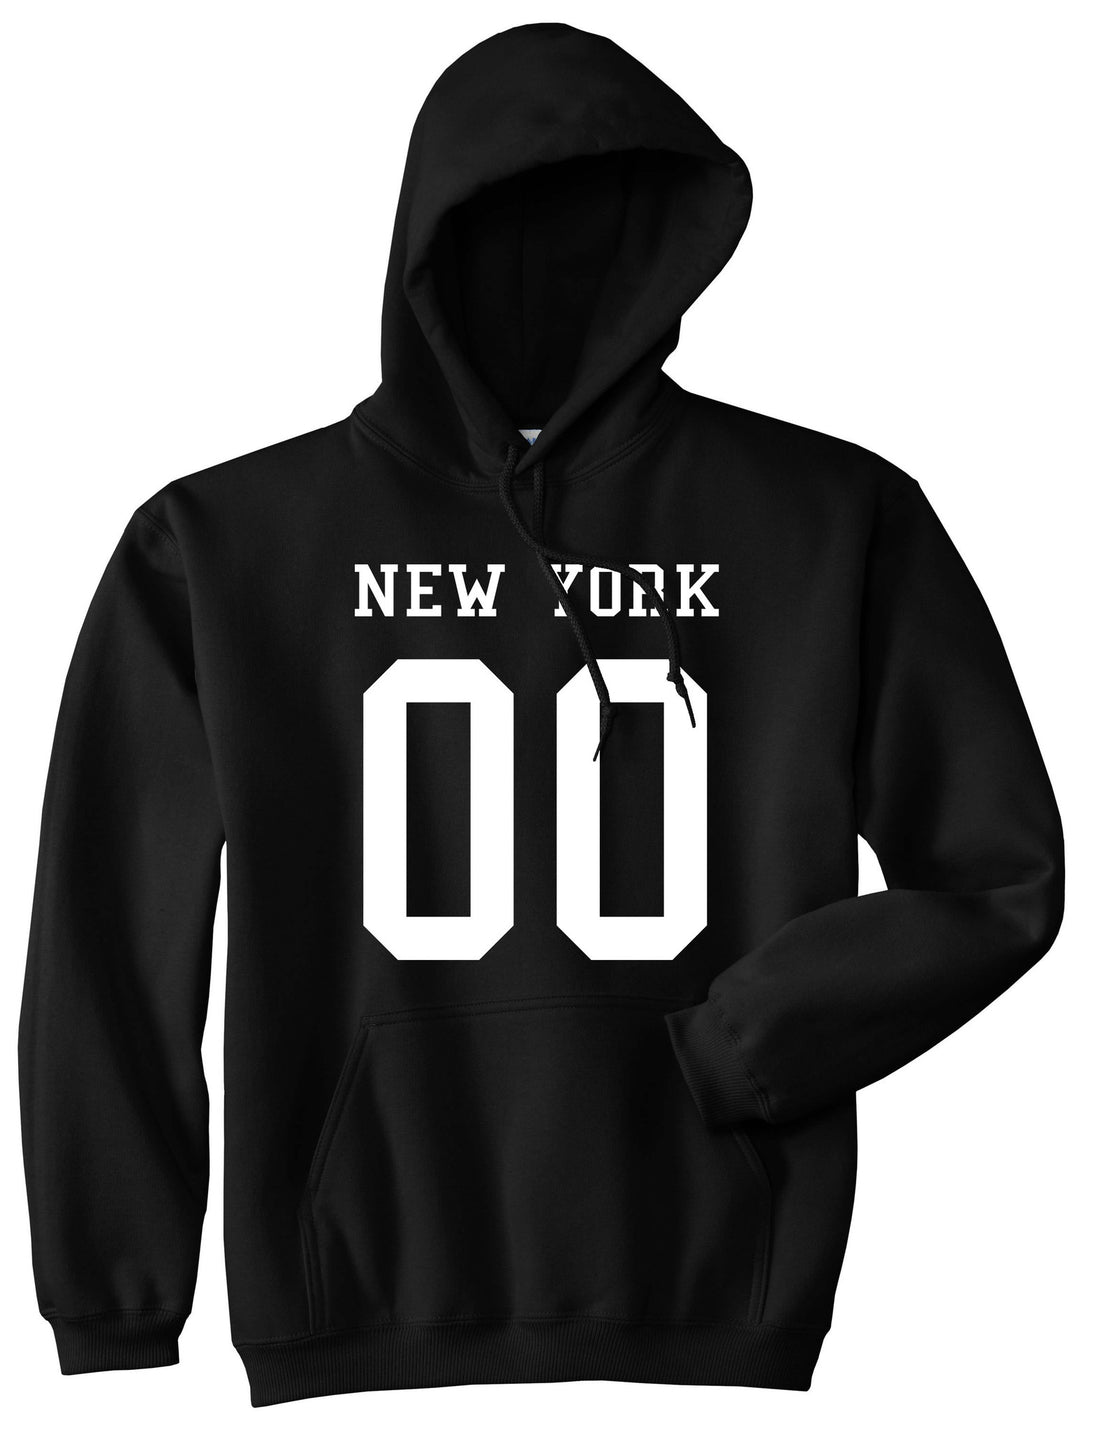 New York Team 00 Jersey Boys Kids Pullover Hoodie Hoody in Black By Kings Of NY